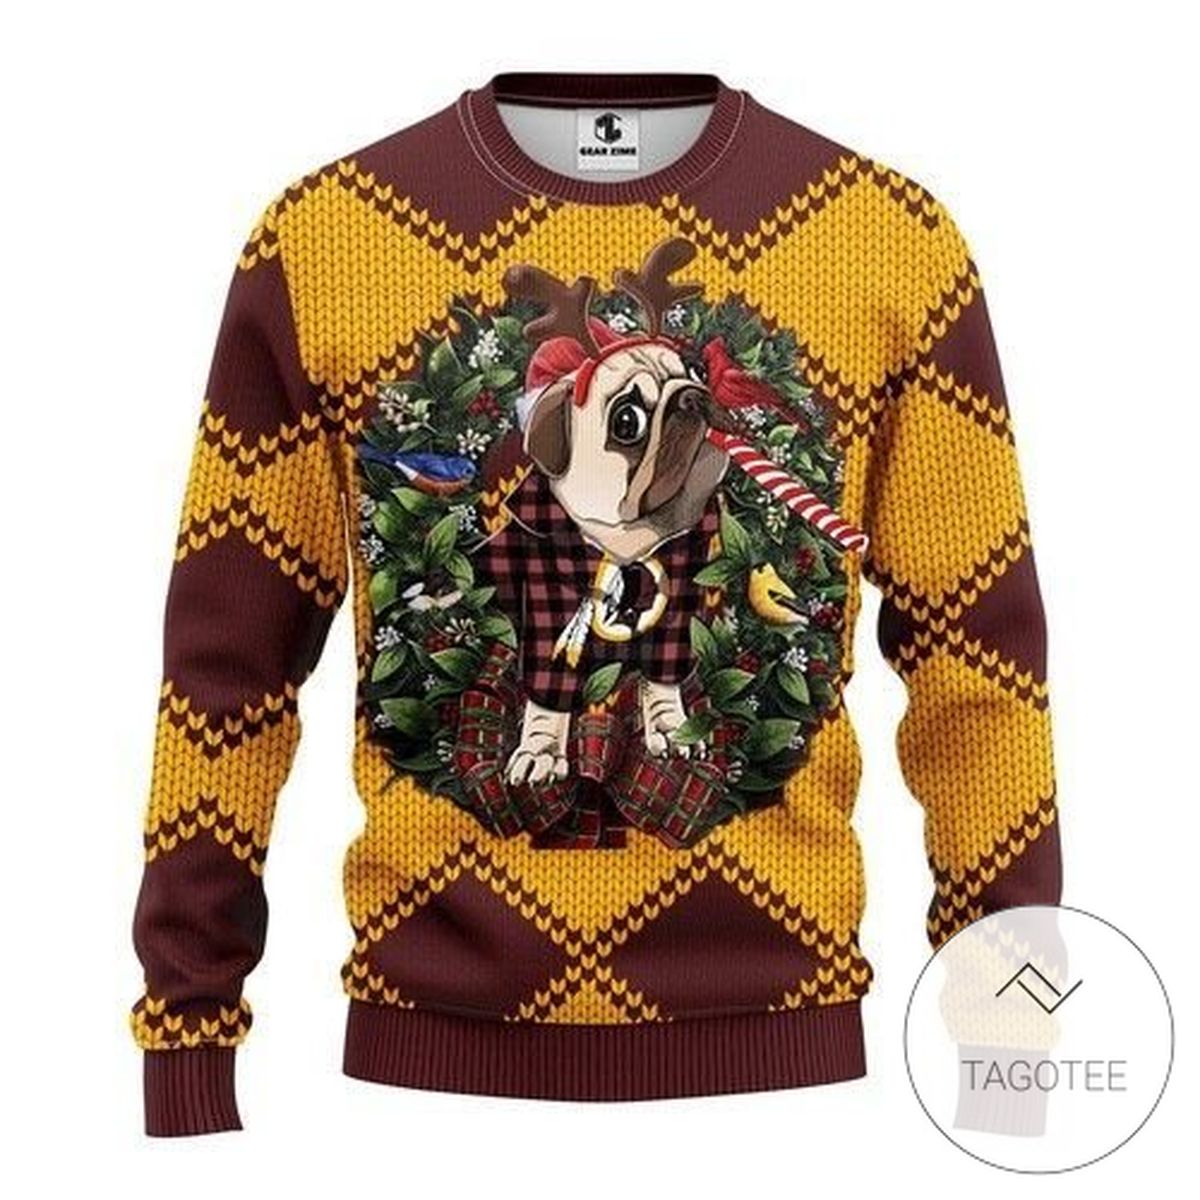 Nfl Washington Redskins Pug Dog Sweatshirt Knitted Ugly Christmas Sweater